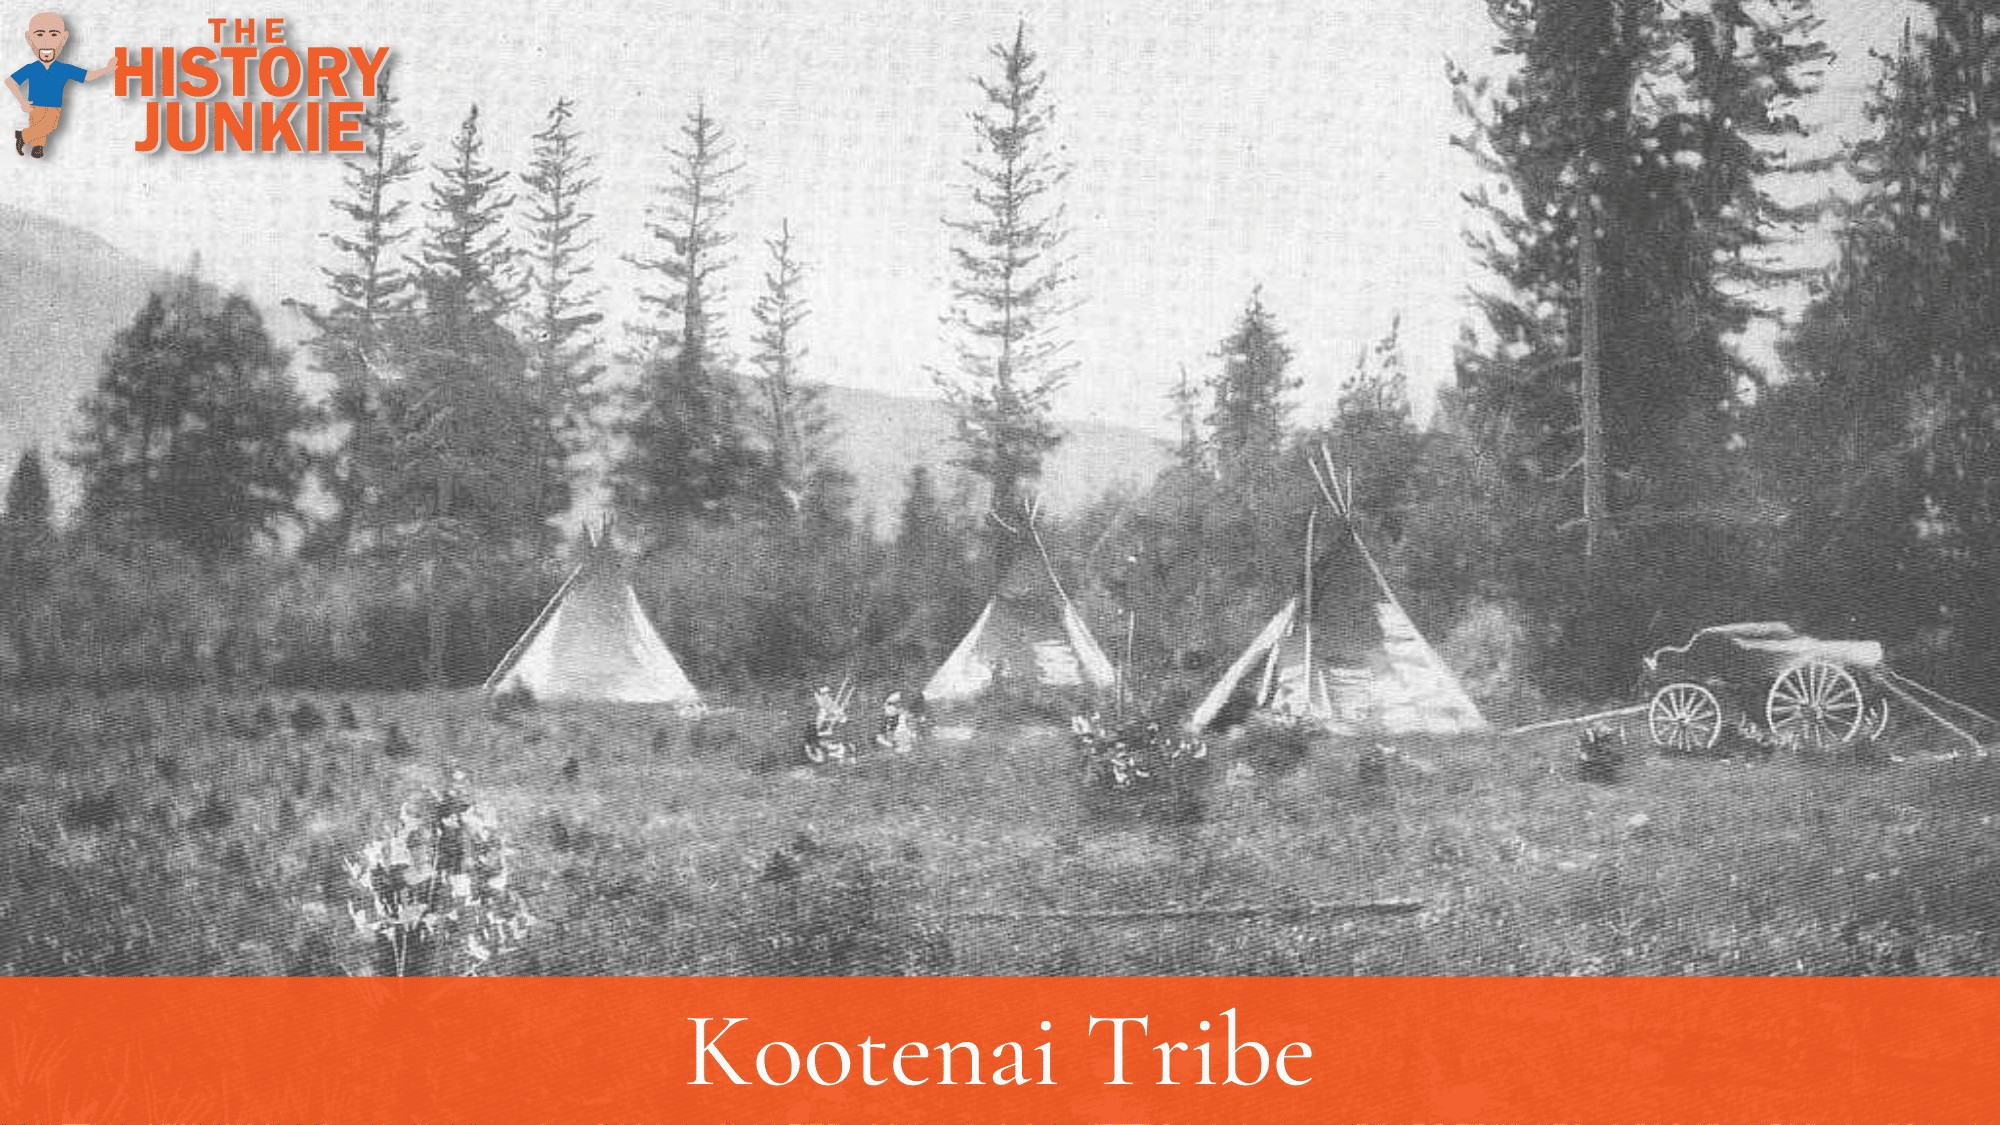 Kootenai Tribe